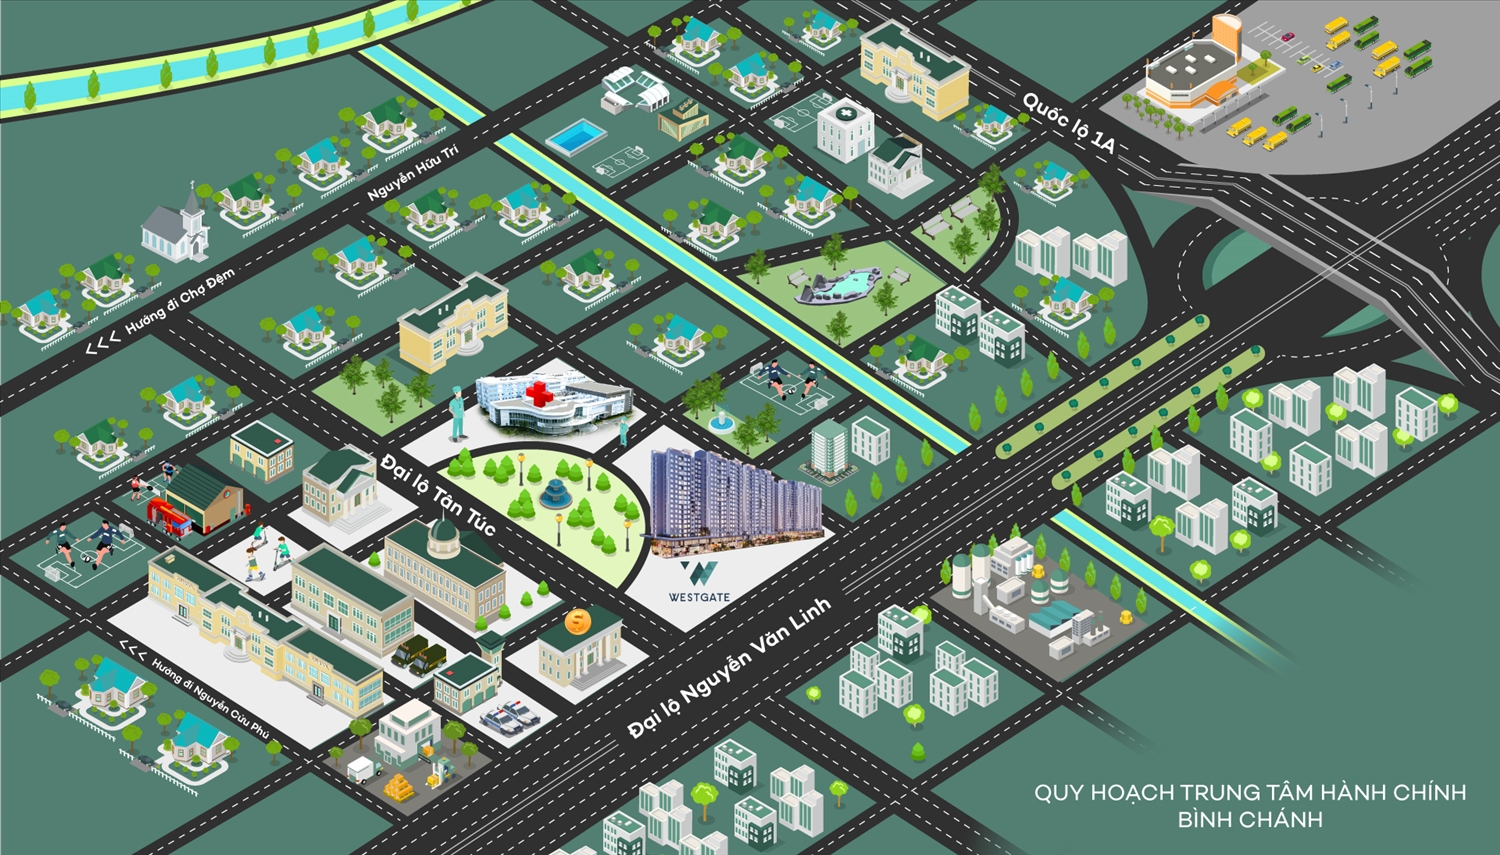 Bình Chánh tích cực hoàn thiện quy hoạch khu trung tâm để lên thành phố